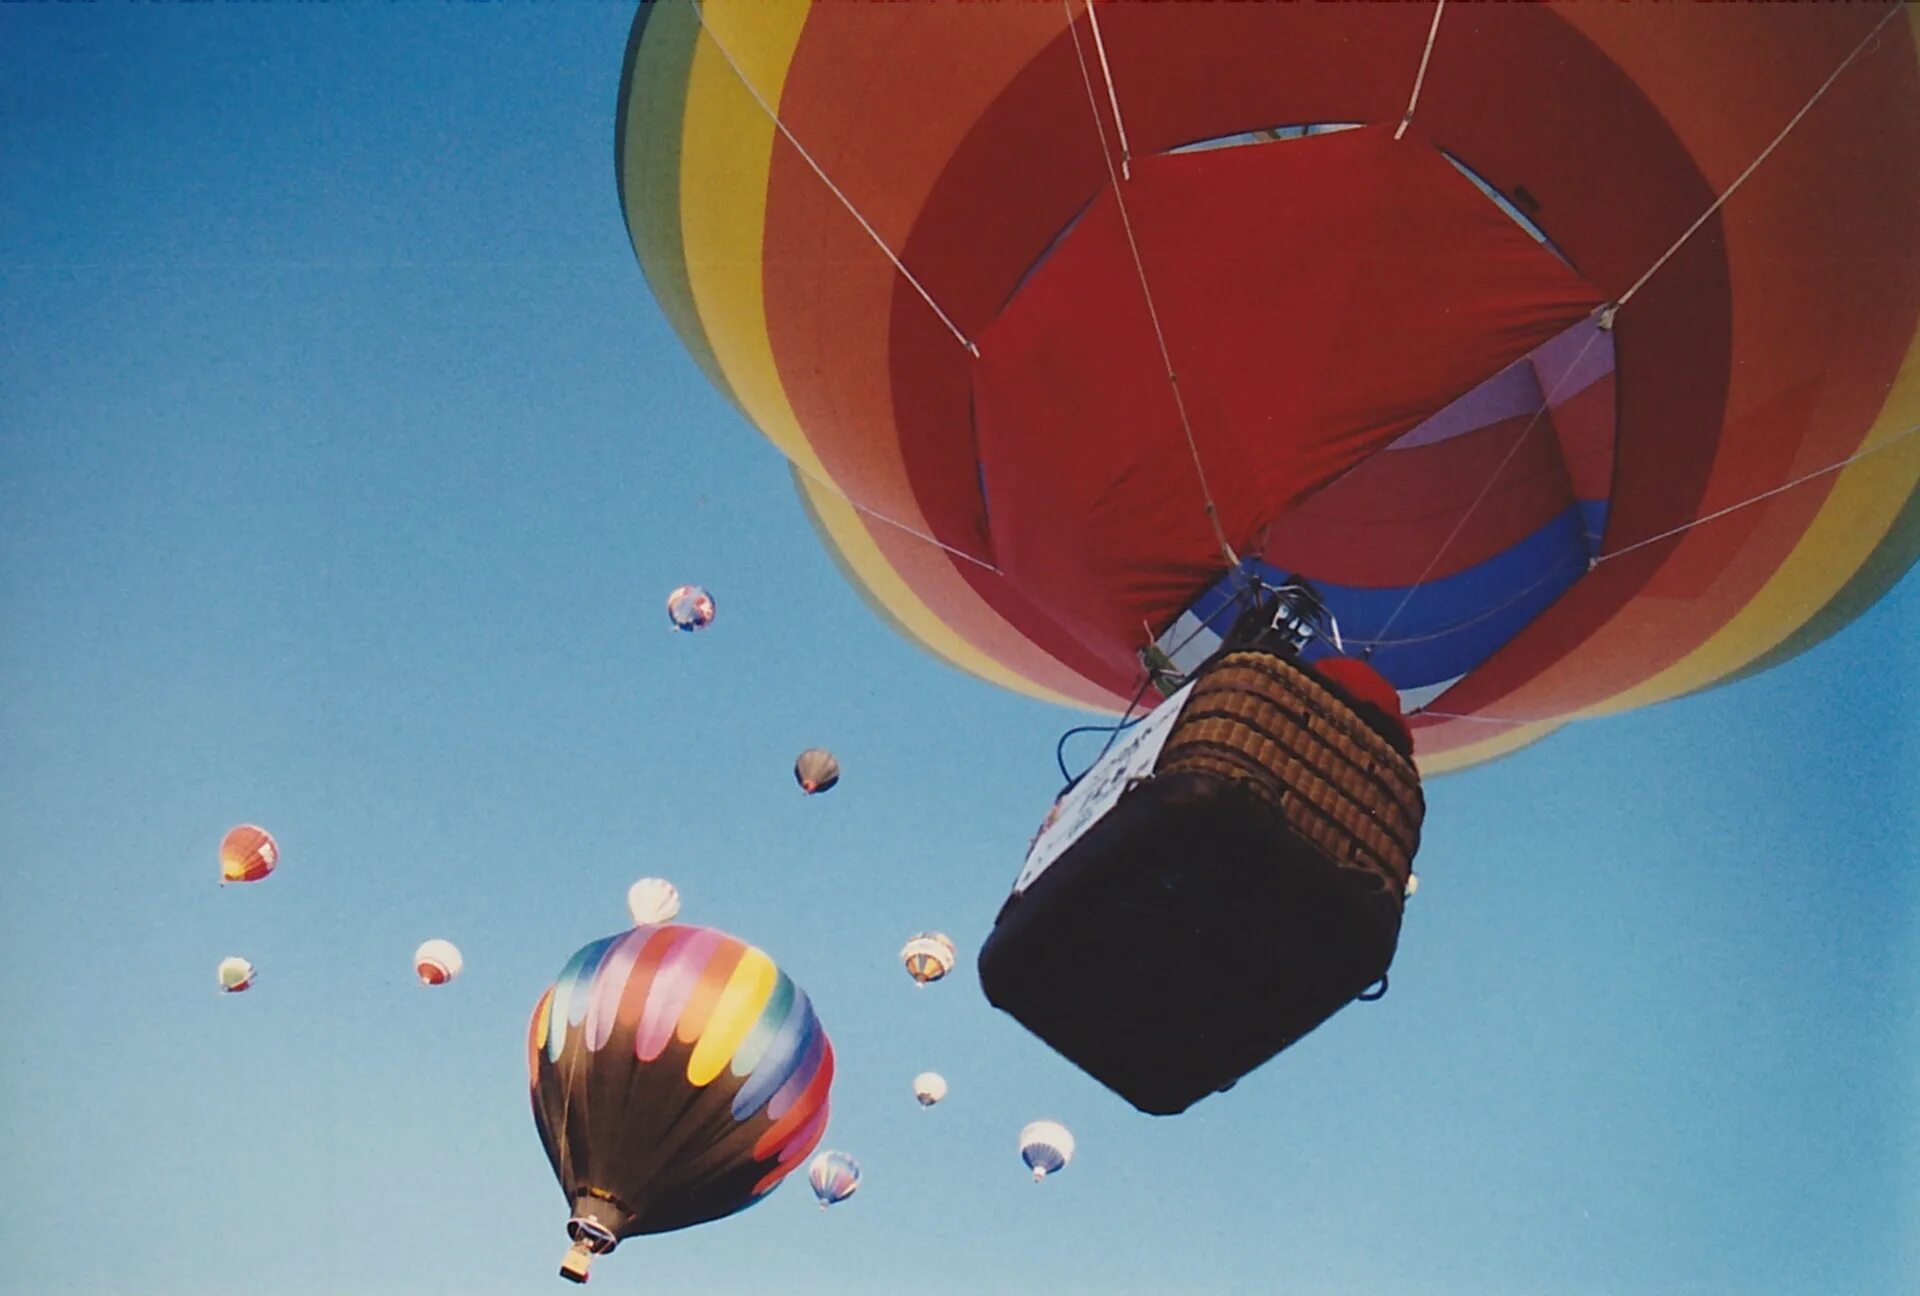 Висит на воздушном шаре. Воздушный шар. Полет на воздушных шариках. Воздушный шар в небе. Воздушный шар с людьми.